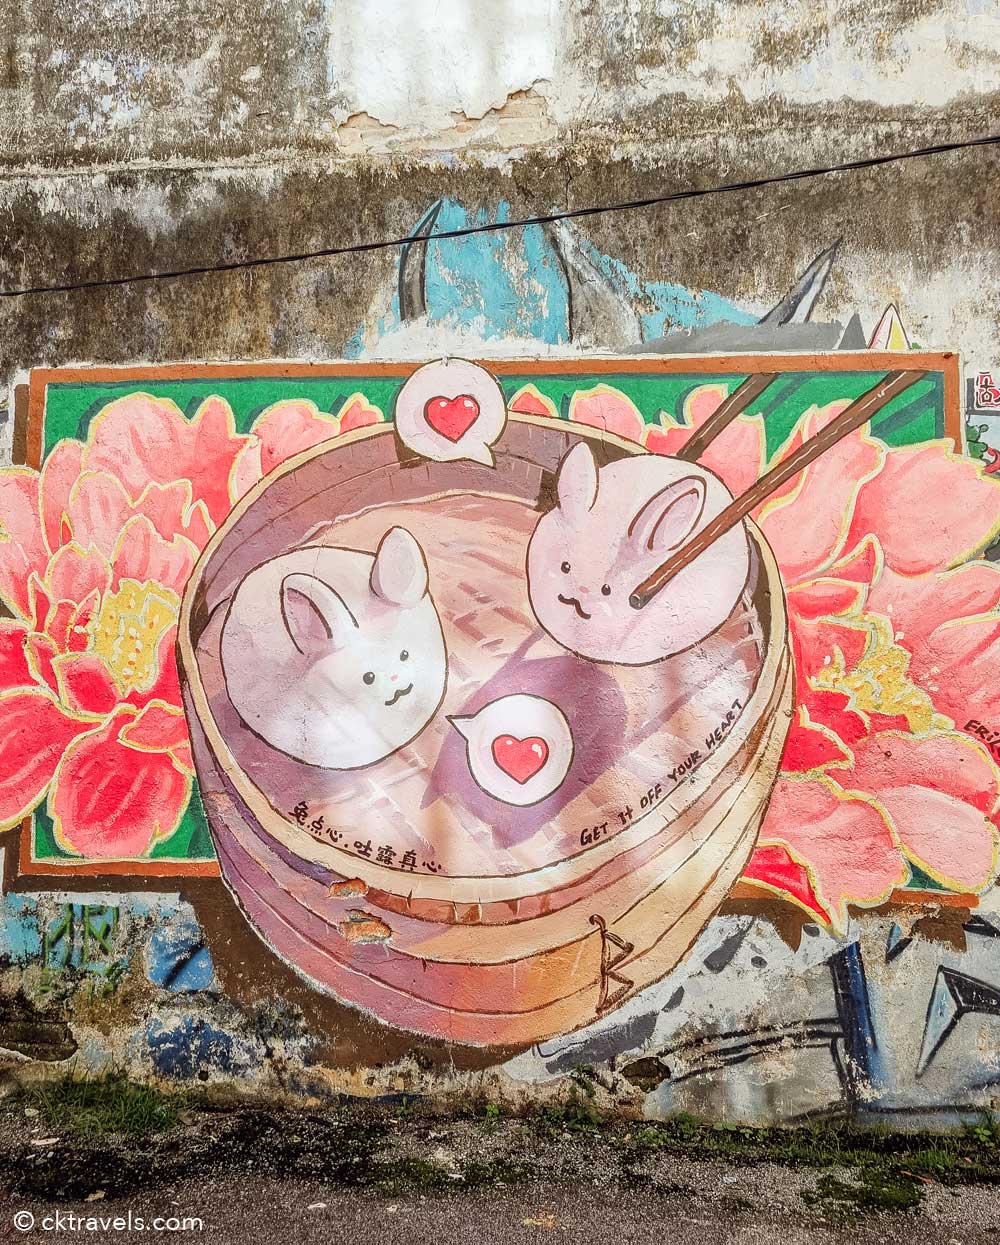 Ipoh Mural Art’s Lane Rabbit bao dim sum street art bamboo steamer